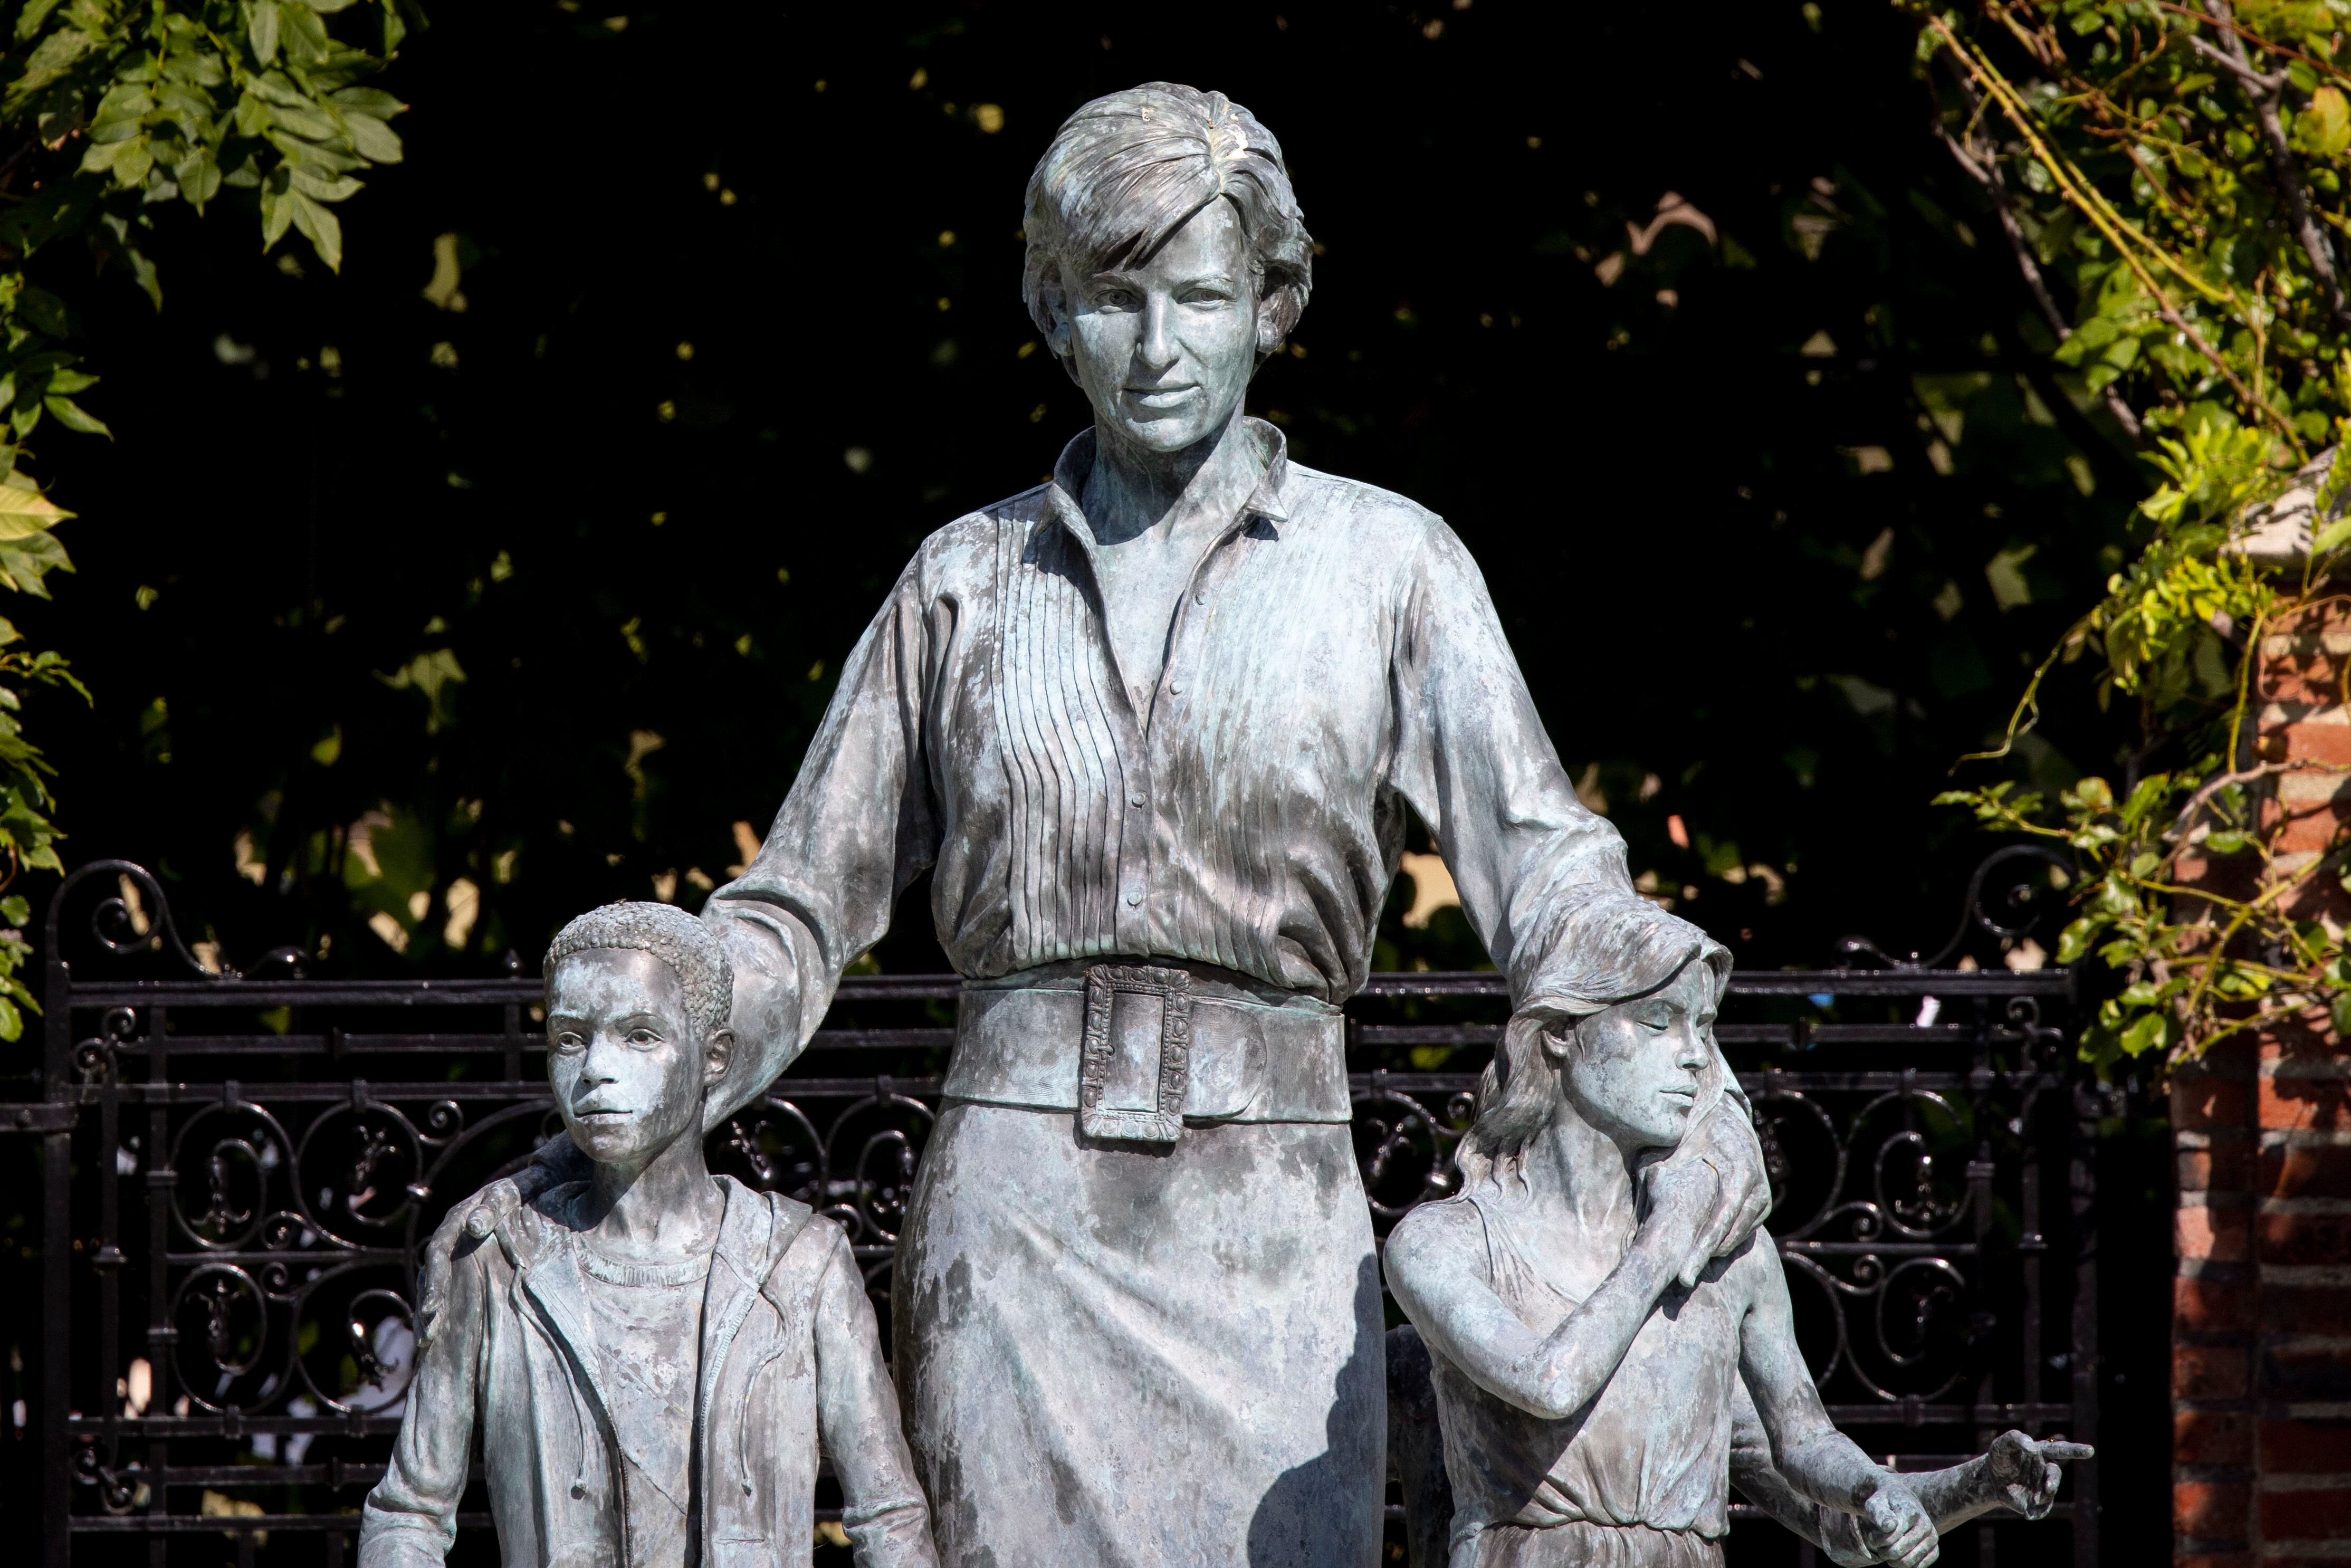 La escultura de bronce fundido de casi tamaño natural de Diana, Princesa de Gales, representada en el Sunken Garden del Palacio de Kensington, residencia de la británica Diana, Princesa de Gales durante el matrimonio y después del divorcio, en Hyde Park en Londres, Gran Bretaña, el 24 de agosto de 2022. 